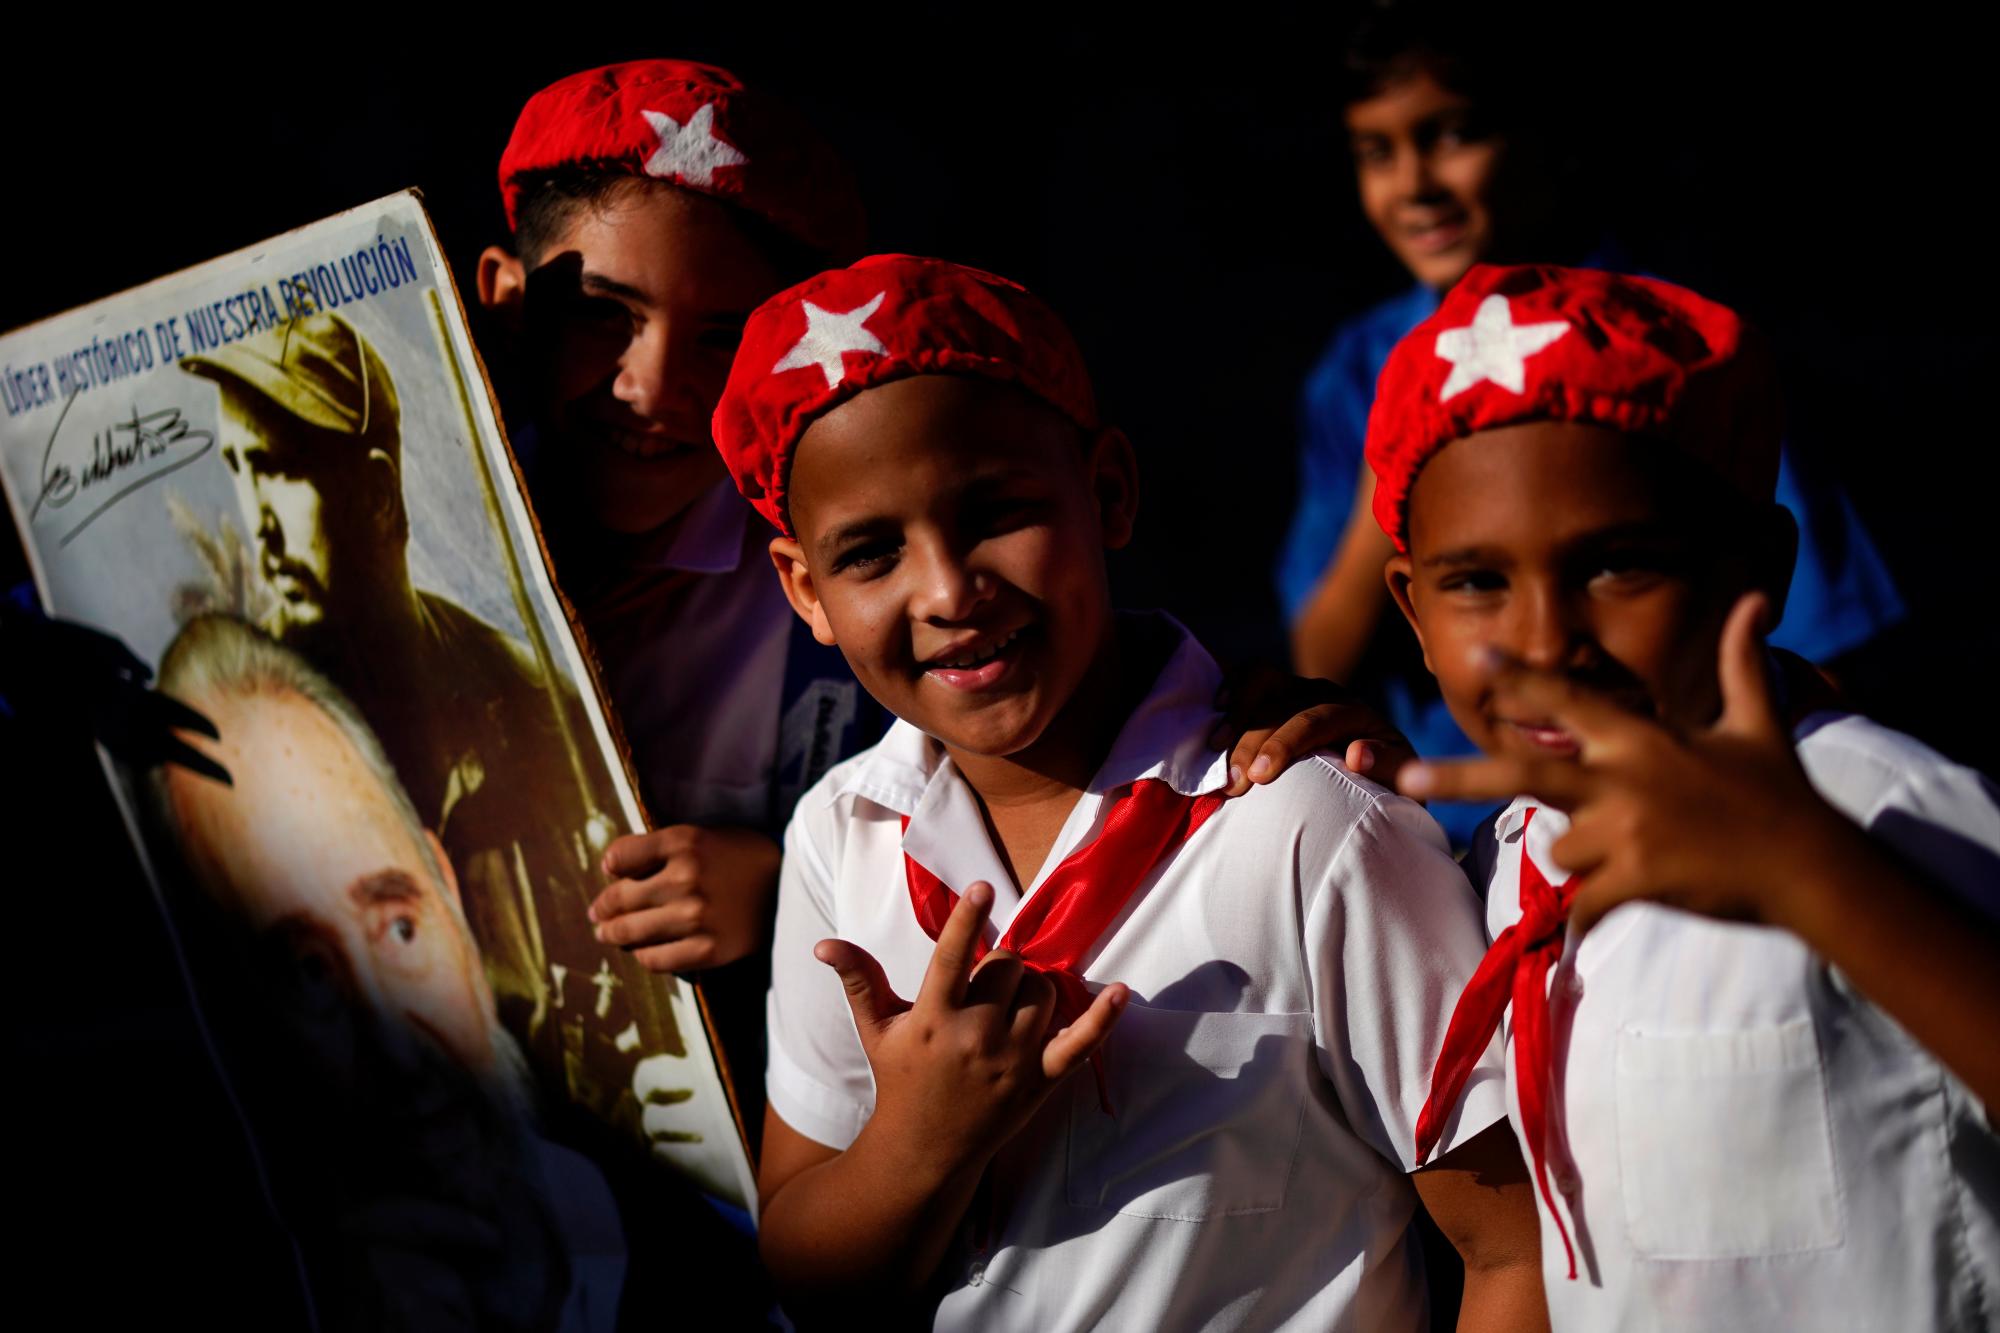 Los jóvenes asisten a una marcha que celebra el 60 aniversario de la llegada de Fidel Castro, en el cartel de la izquierda, y su ejército rebelde a Regla, un área dentro de La Habana, Cuba. Castro y sus rebeldes llegaron a La Habana en una caravana el 8 de enero de 1959, después de derrocar al dictador Fulgencio Batista.